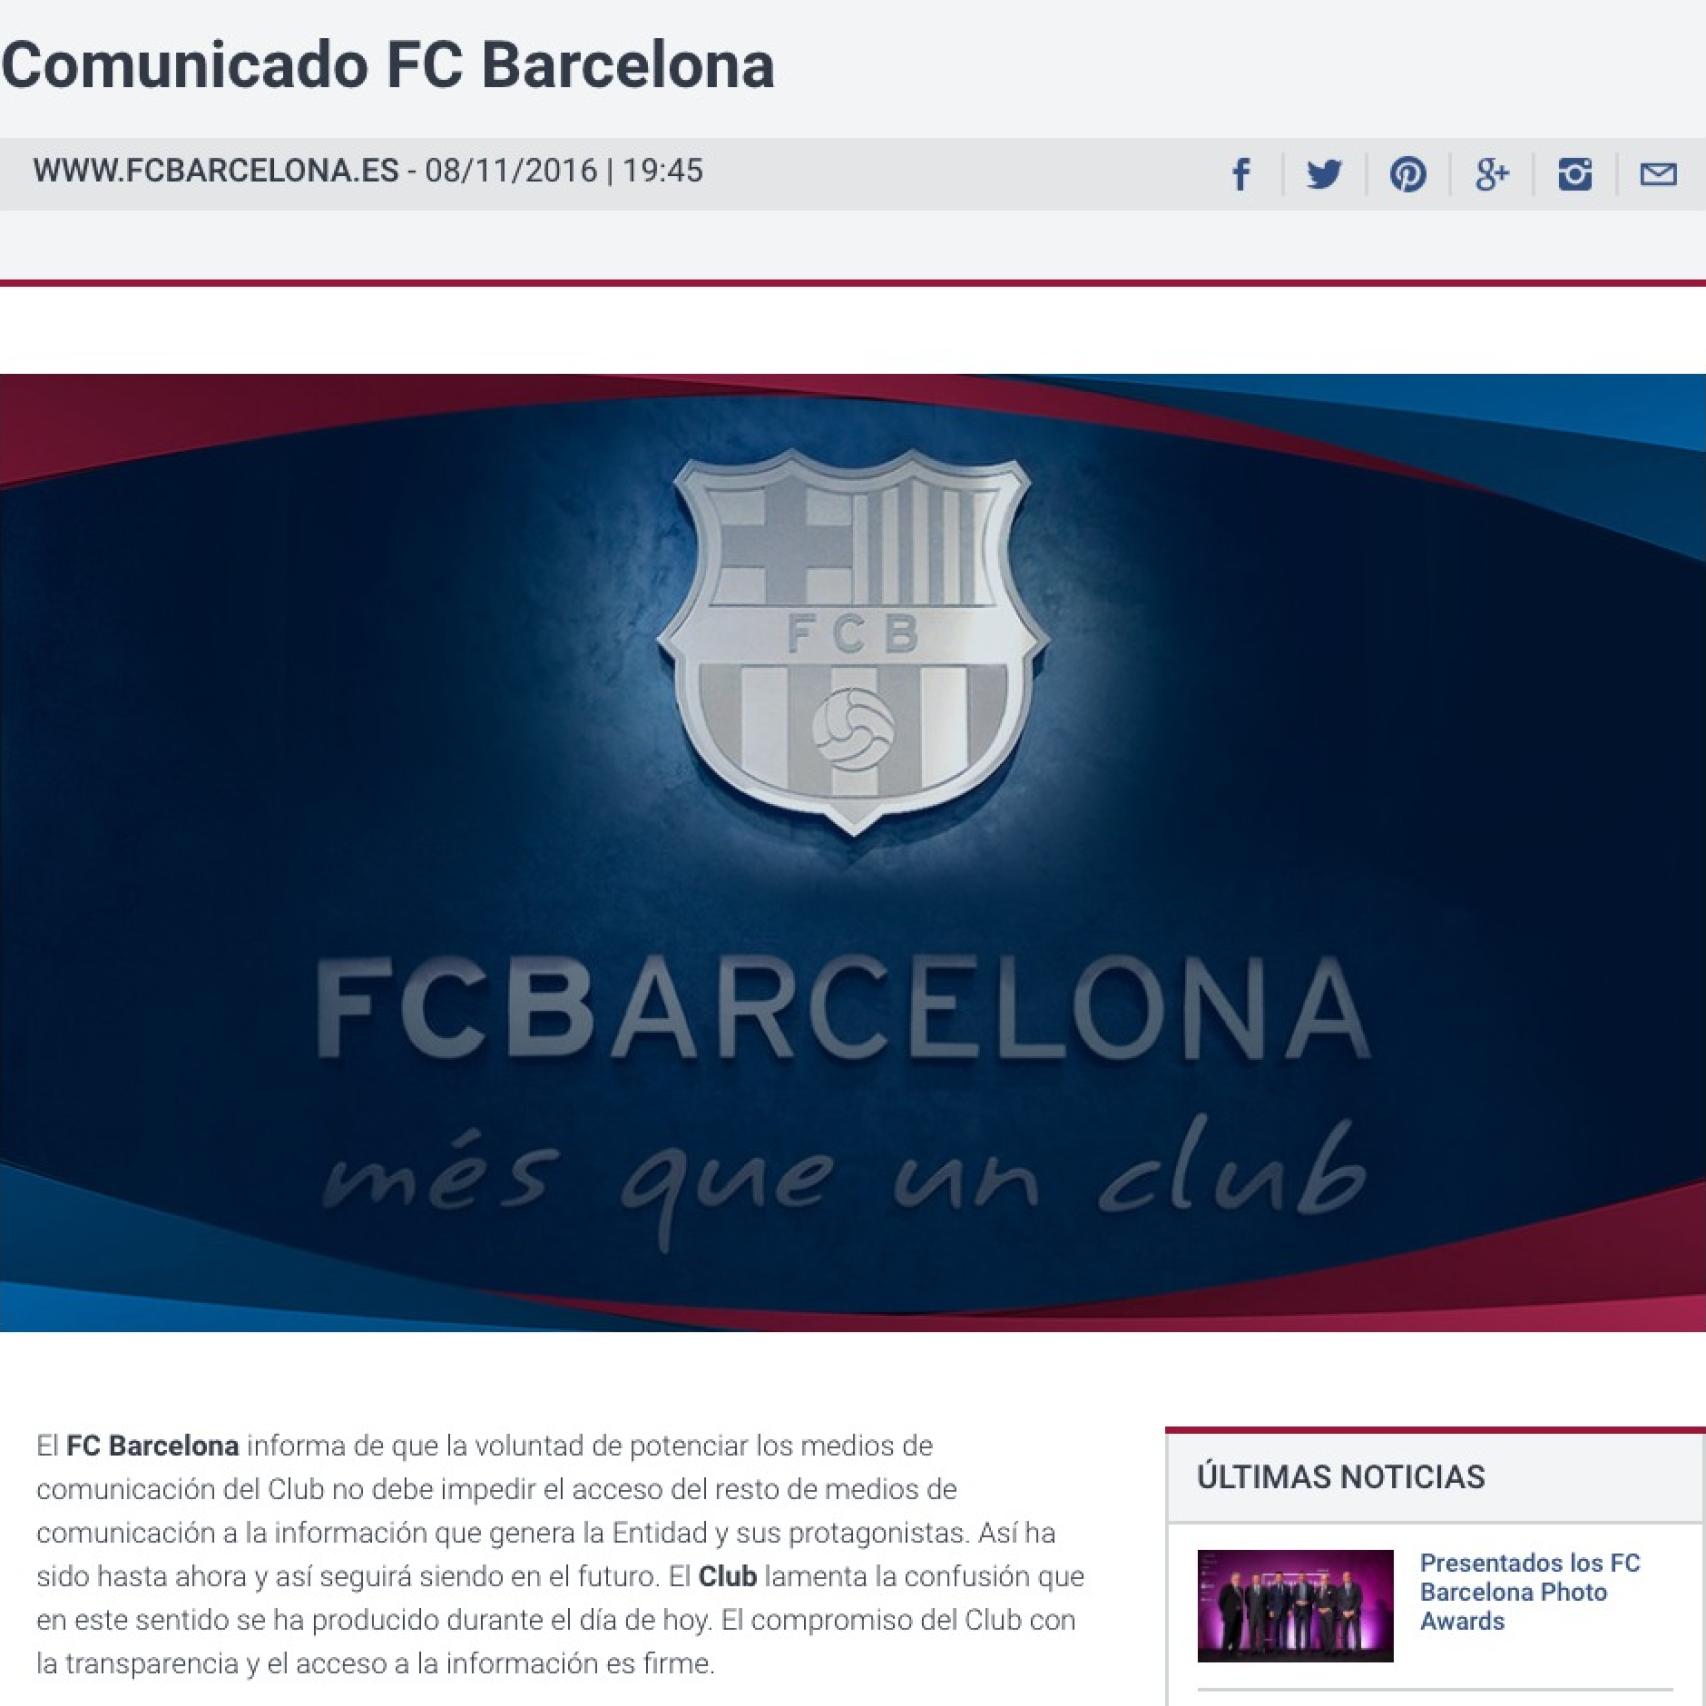 Comunicado del FC Barcelona publicado en su página web.